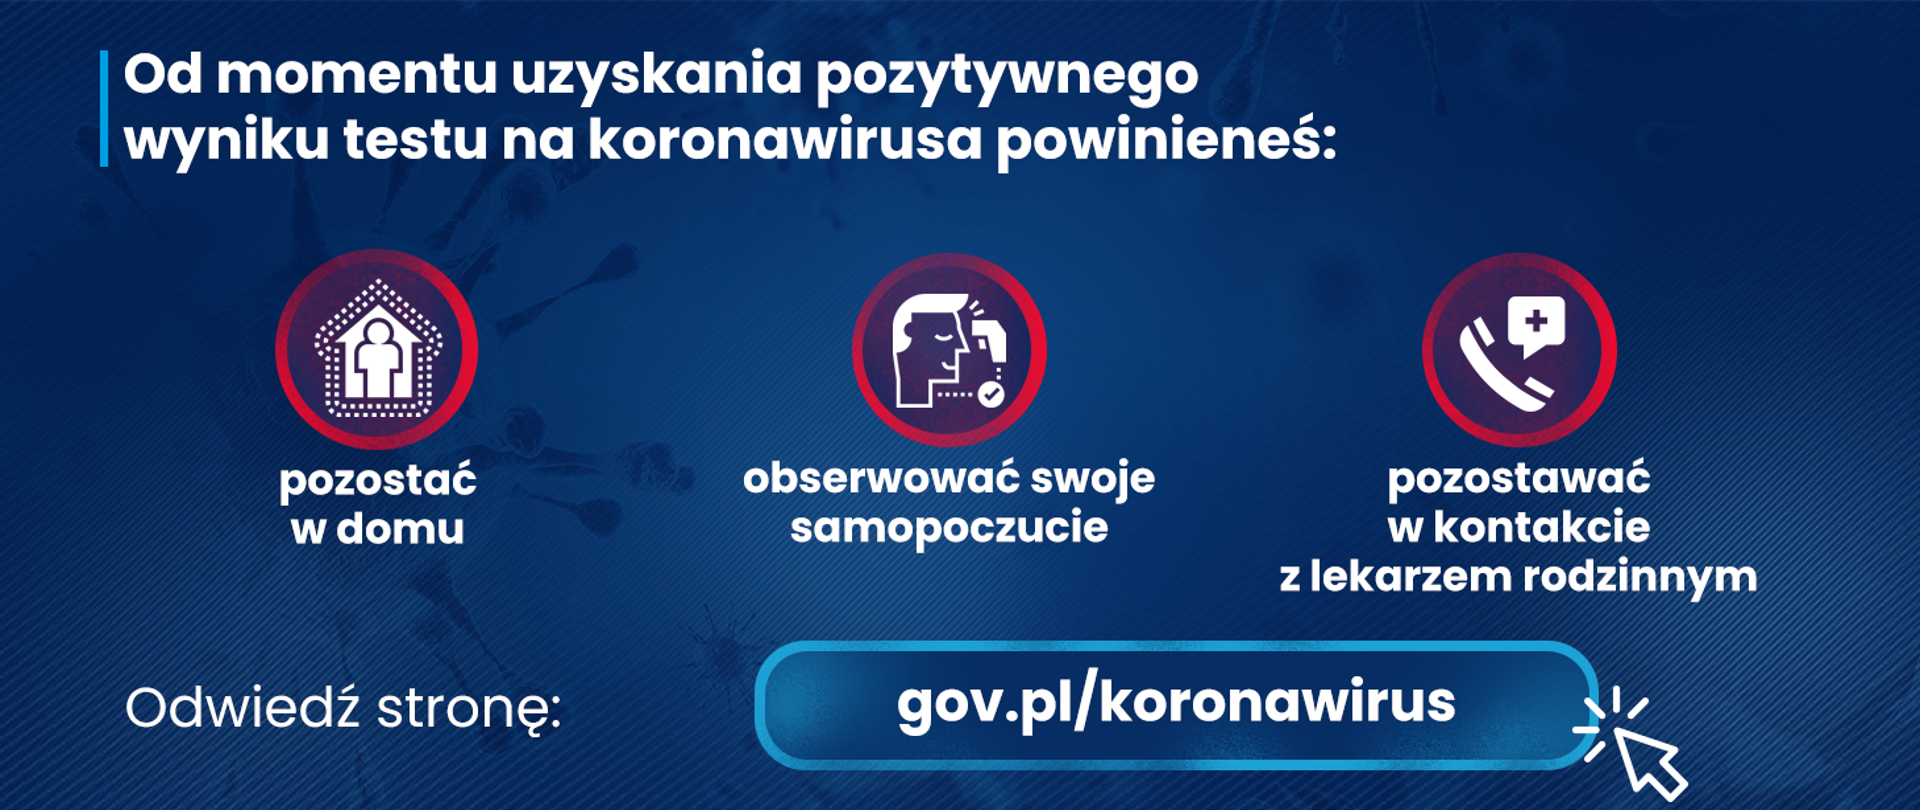 Granatowa grafika z ikonami i tekstem informującym o prawidłowym zachowaniu po uzyskaniu pozytywnego wyniku testu na koronawirusa.
Zachęta do odwiedzenia strony gov.pl/koronawirus